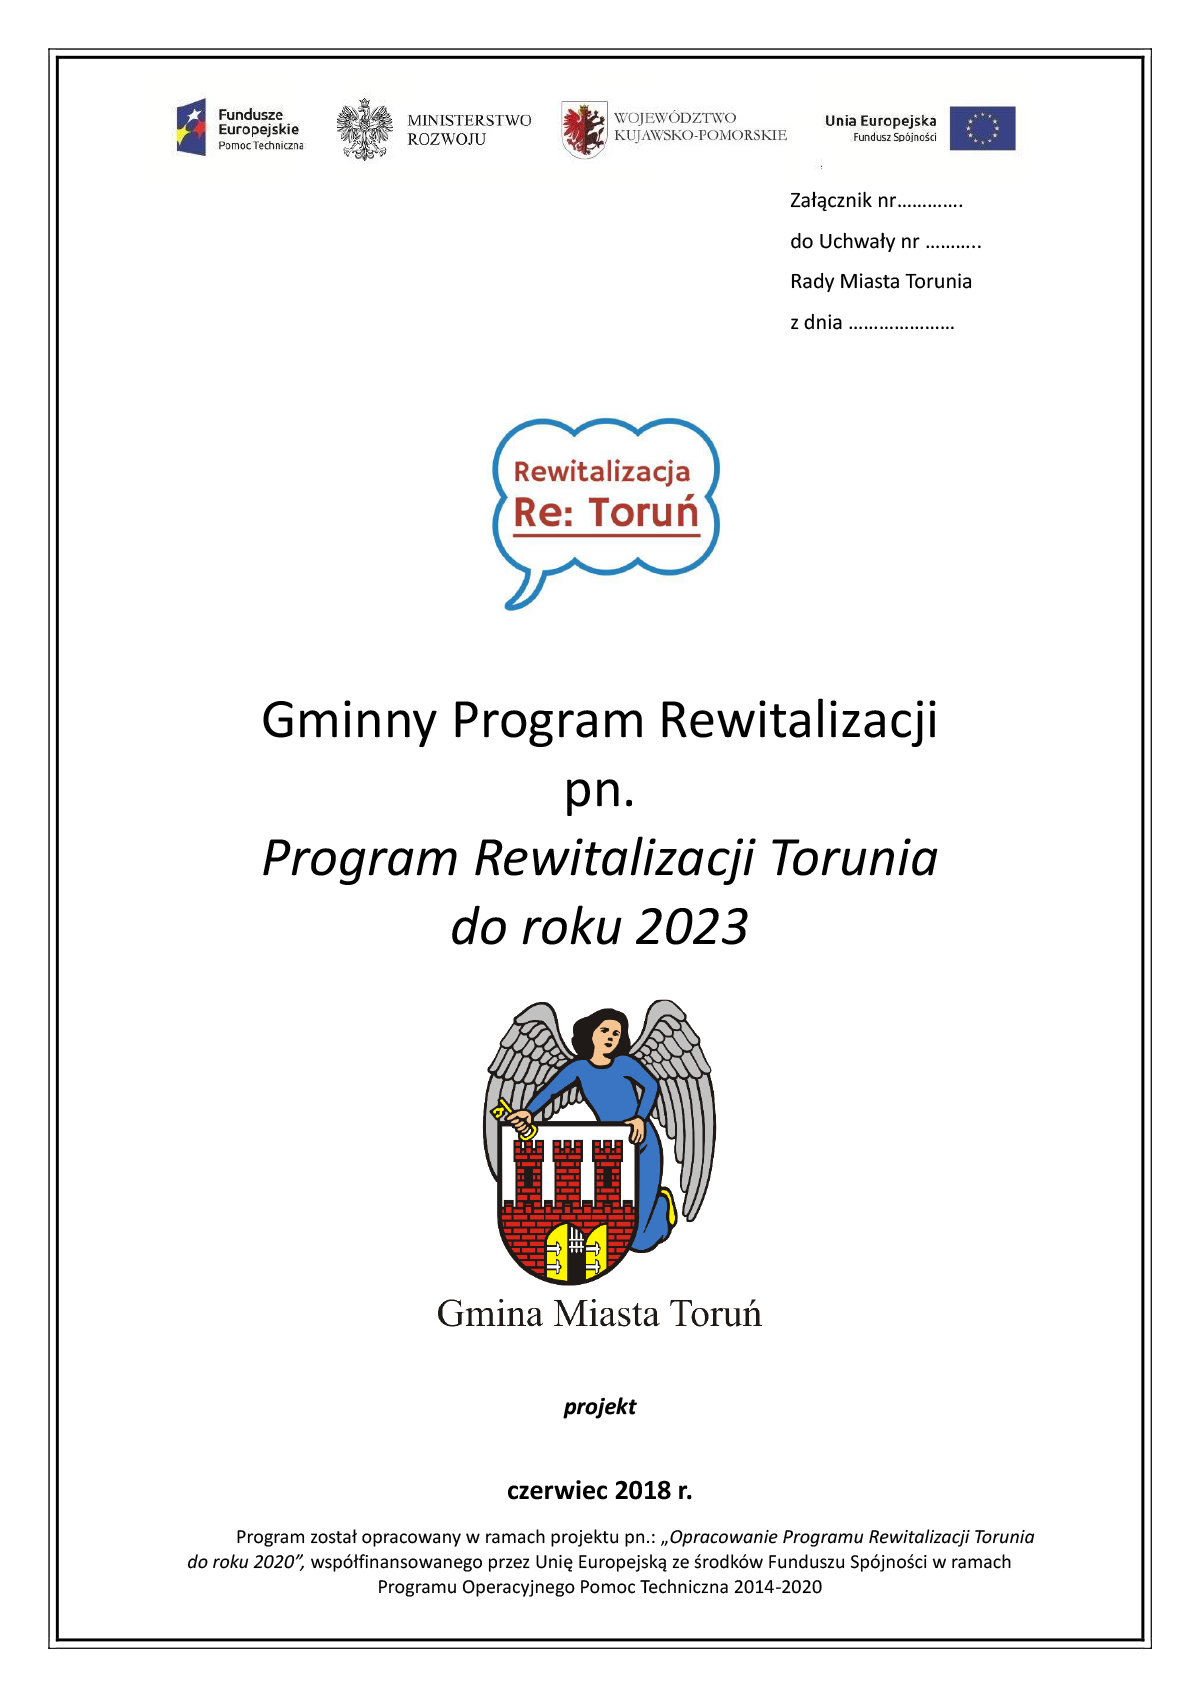 Program Rewitalizacji Torunia do roku 2023